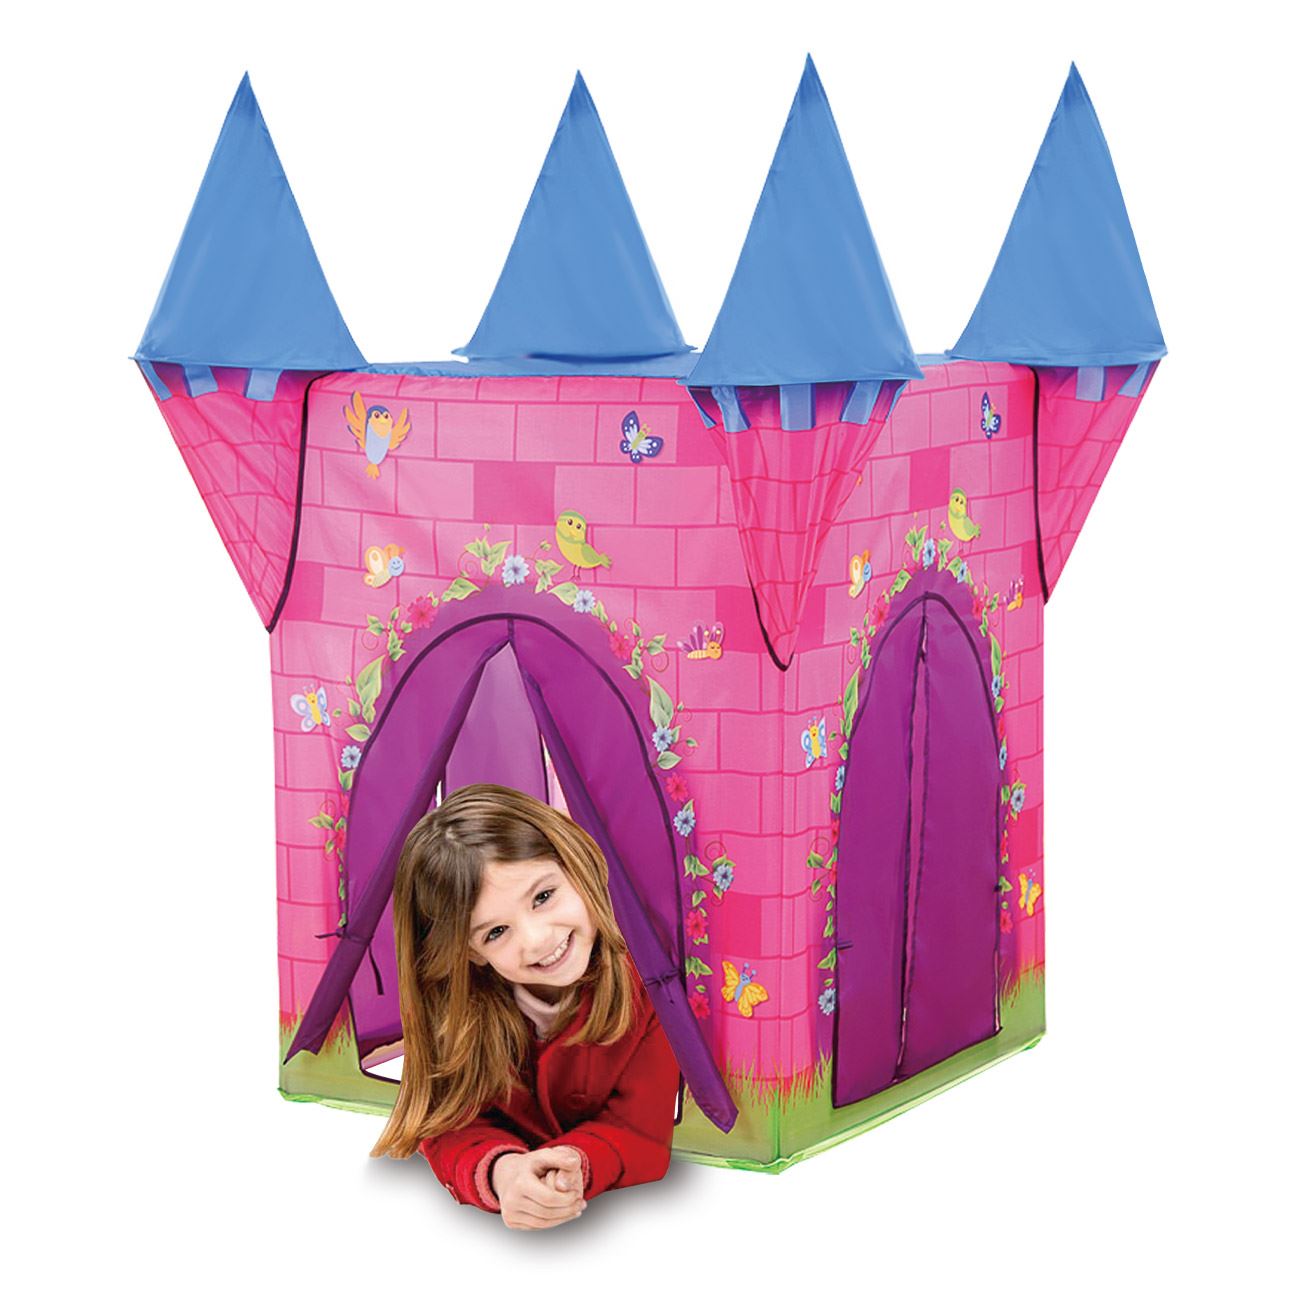 Játszósátor gyerekeknek - Királylány kastély 110x110x132cm